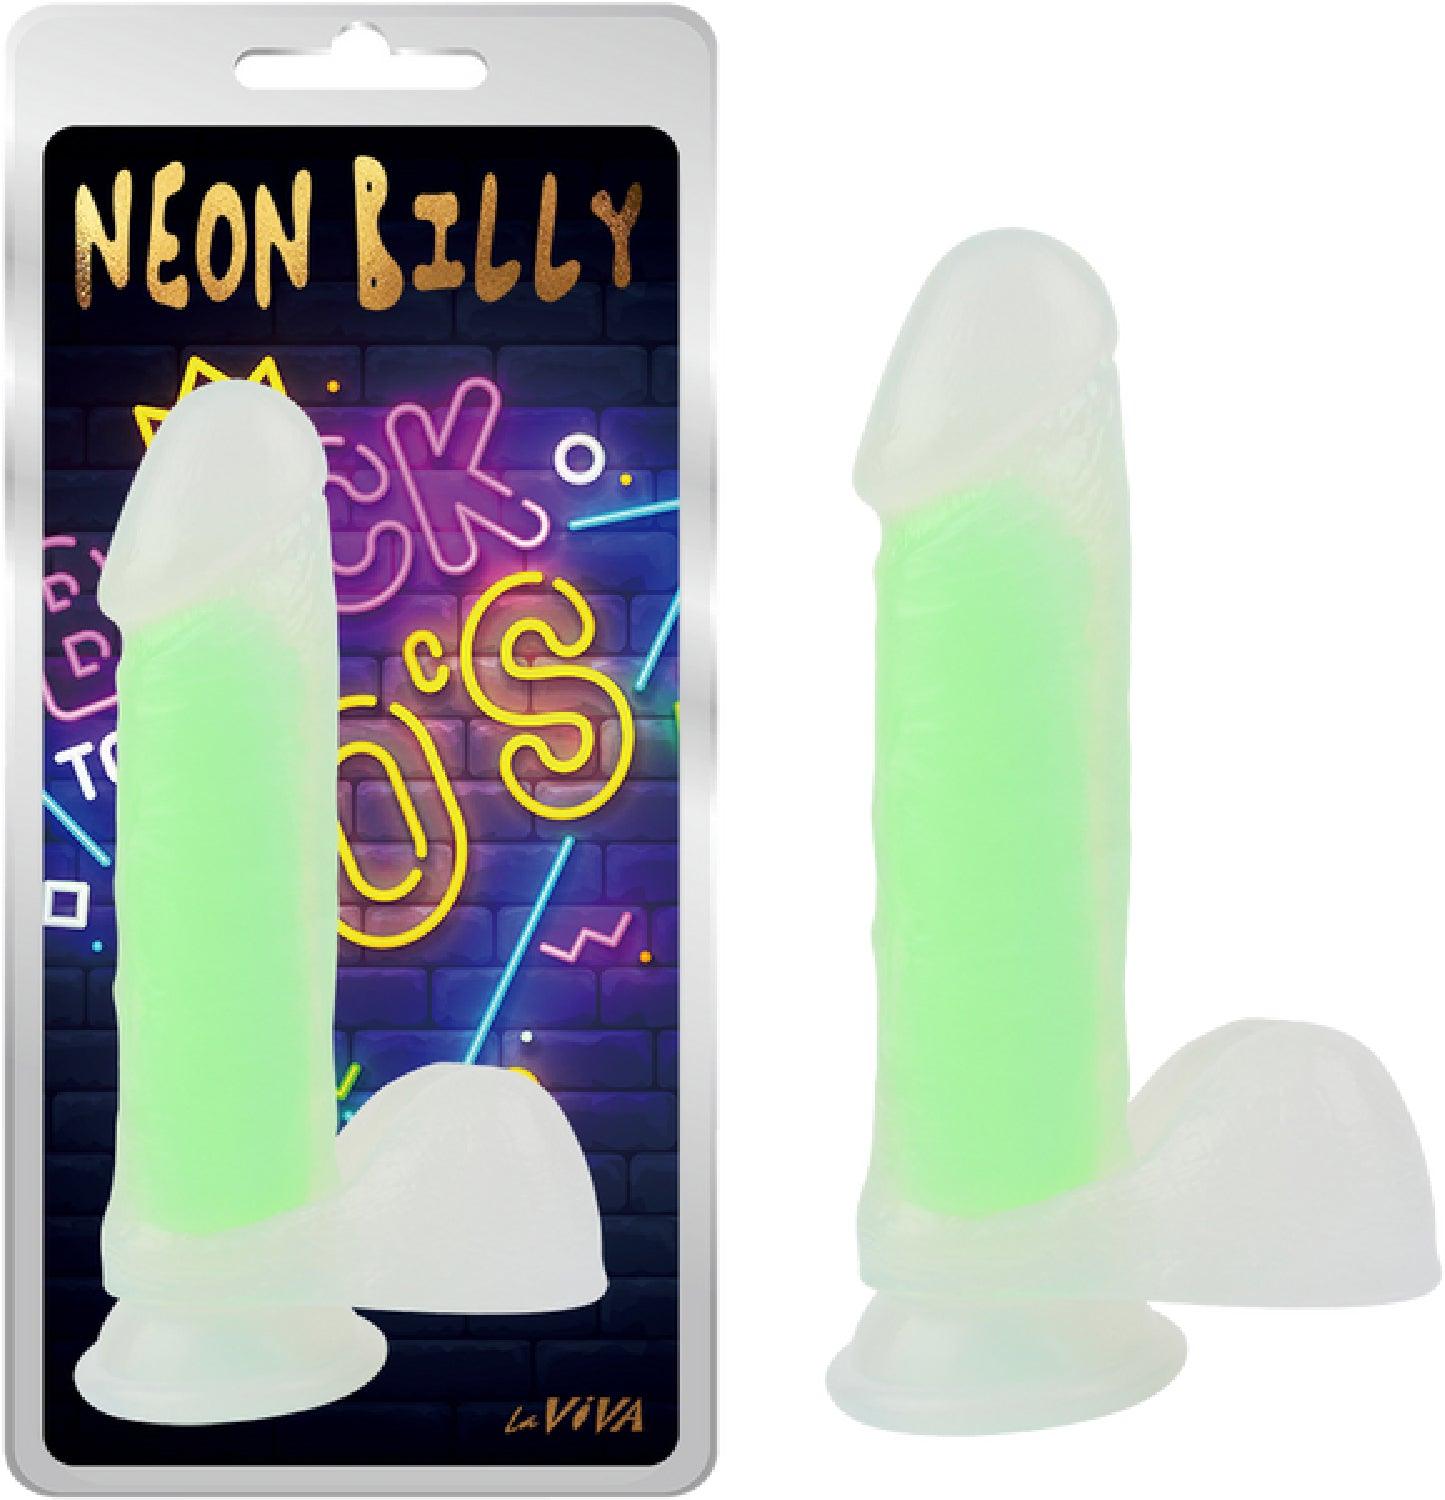 Neon Billy 7.6" - Take A Peek